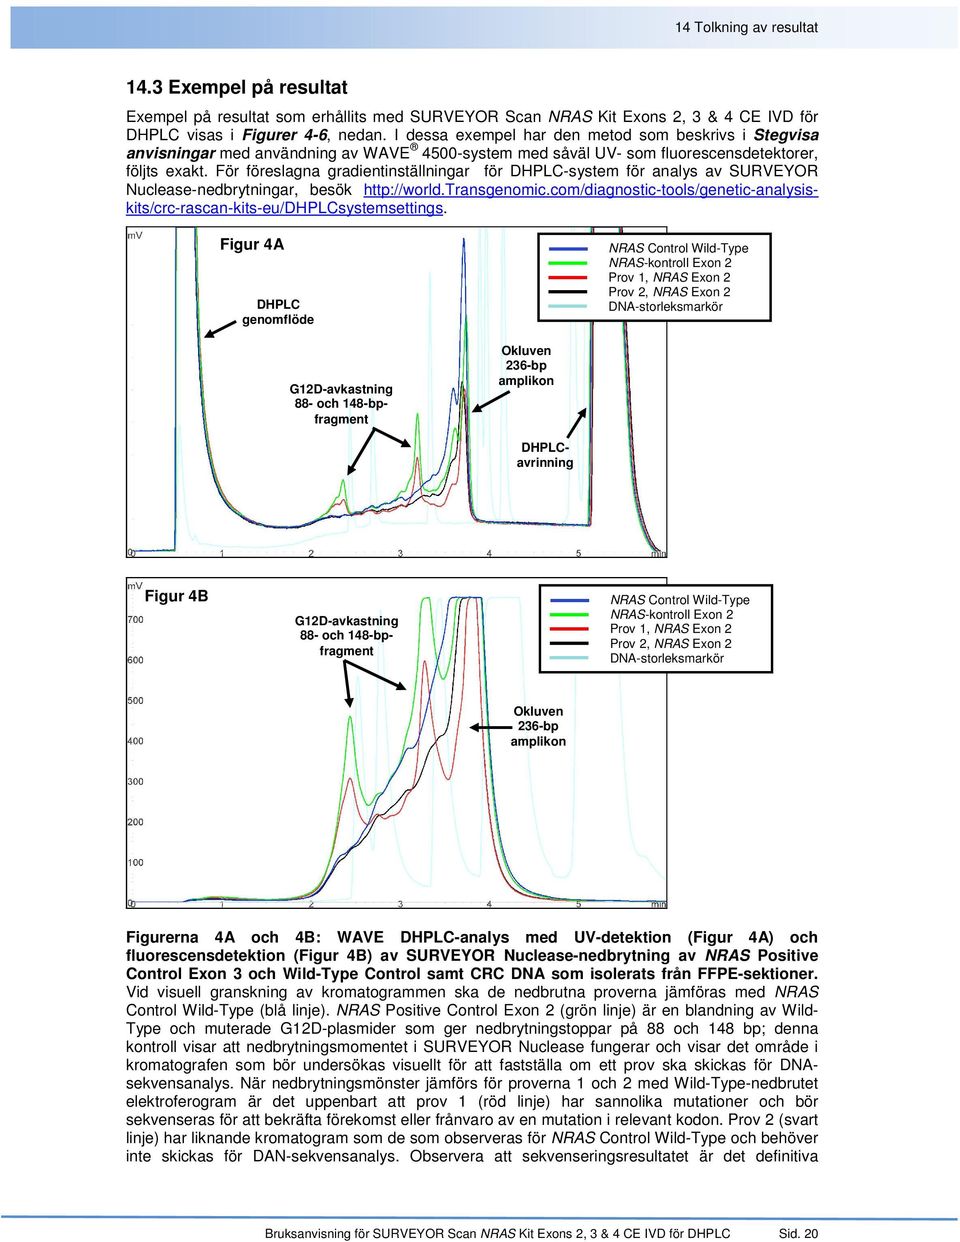 För föreslagna gradientinställningar för DHPLC-system för analys av SURVEYOR Nuclease-nedbrytningar, besök http://world.transgenomic.